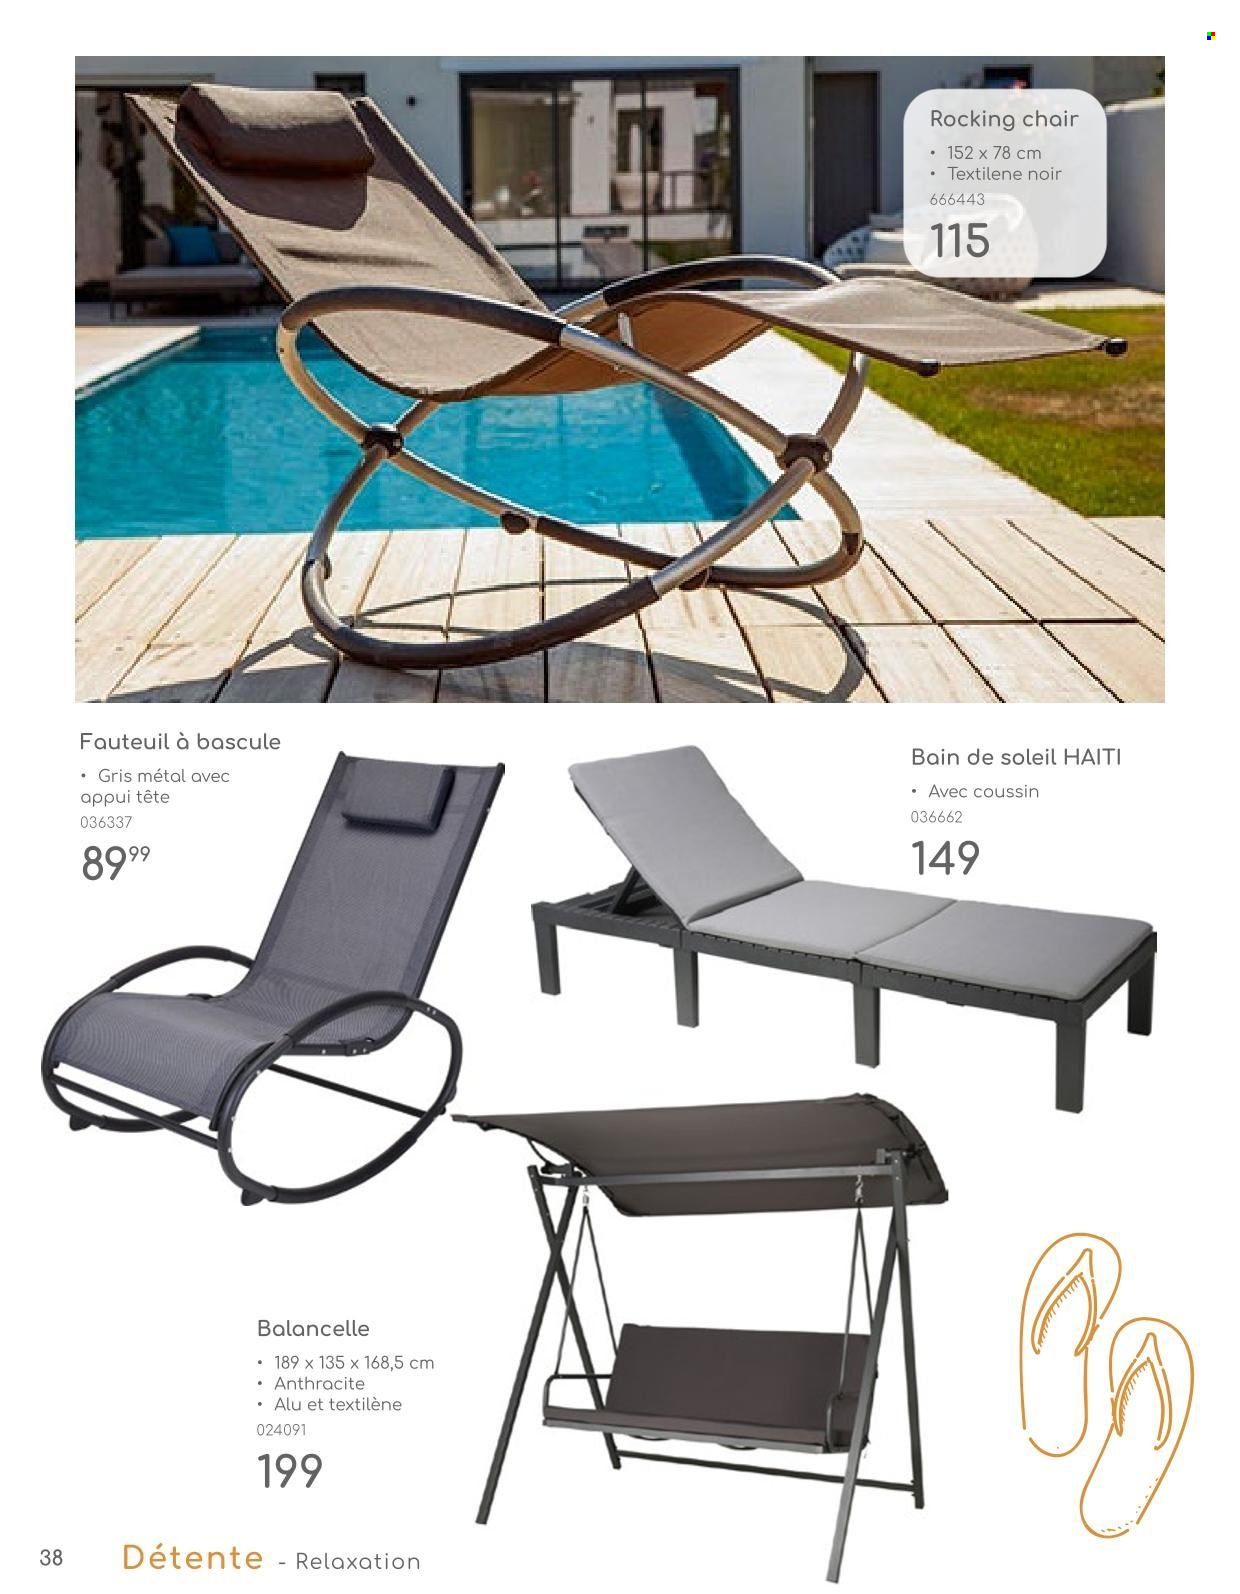 thumbnail - Catalogue Mr. Bricolage - Produits soldés - fauteuil, bain de soleil. Page 38.